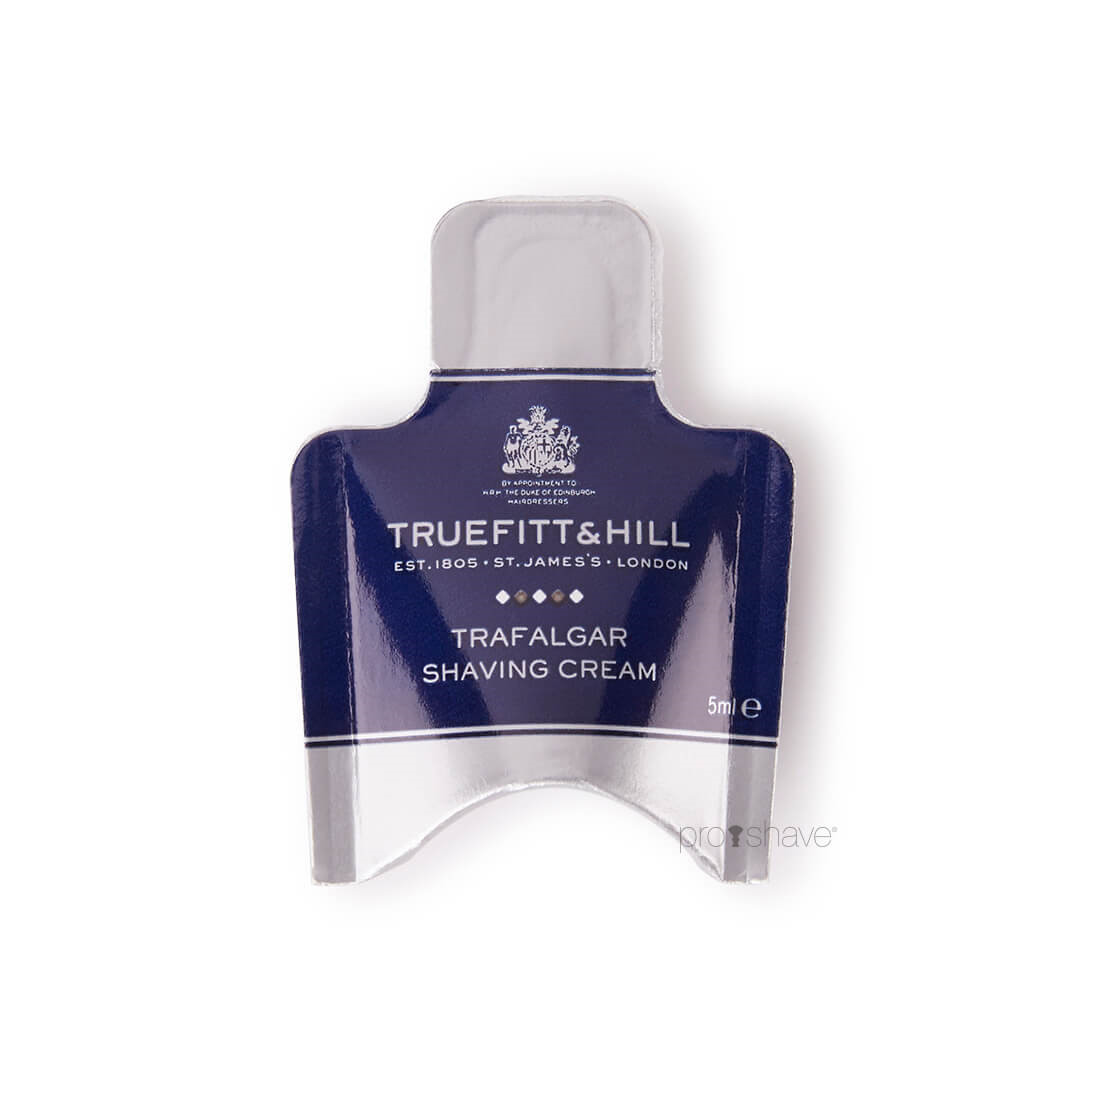 Billede af Truefitt & Hill Trafalgar Shaving Cream Sample Pack, 5 ml.